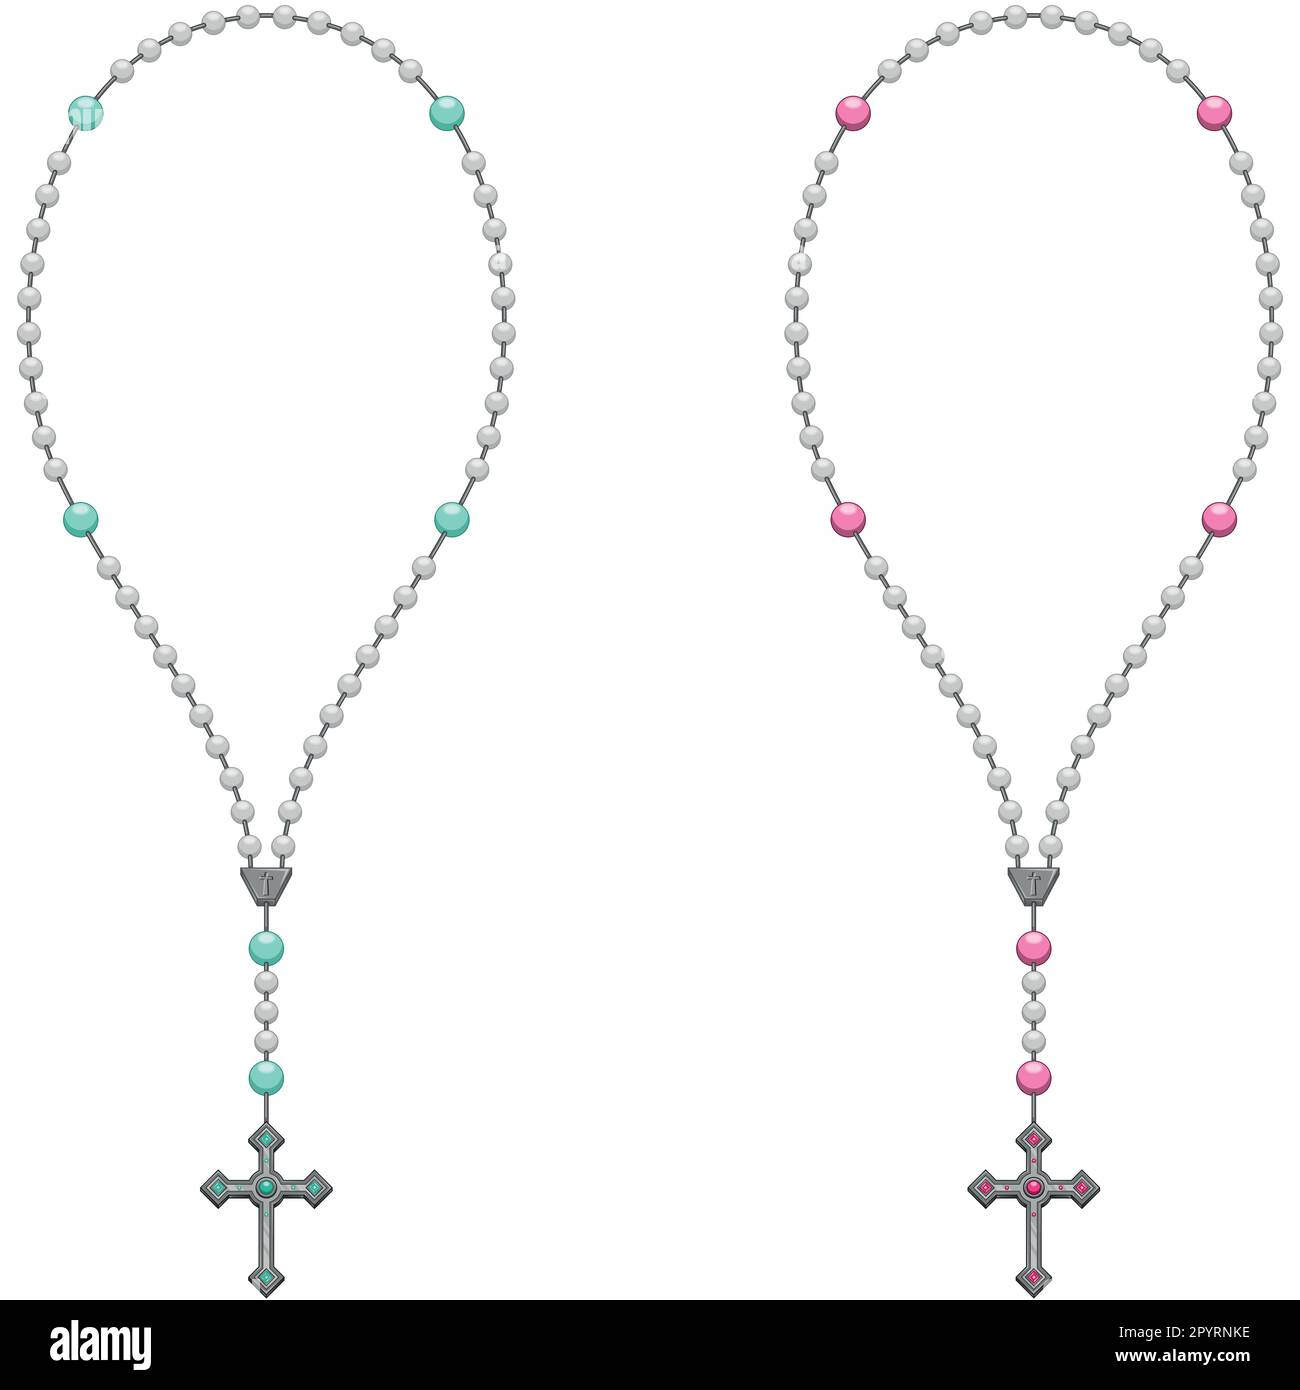 Dessin vectoriel de rosaire avec croix chrétienne, symbole de la religion catholique Illustration de Vecteur